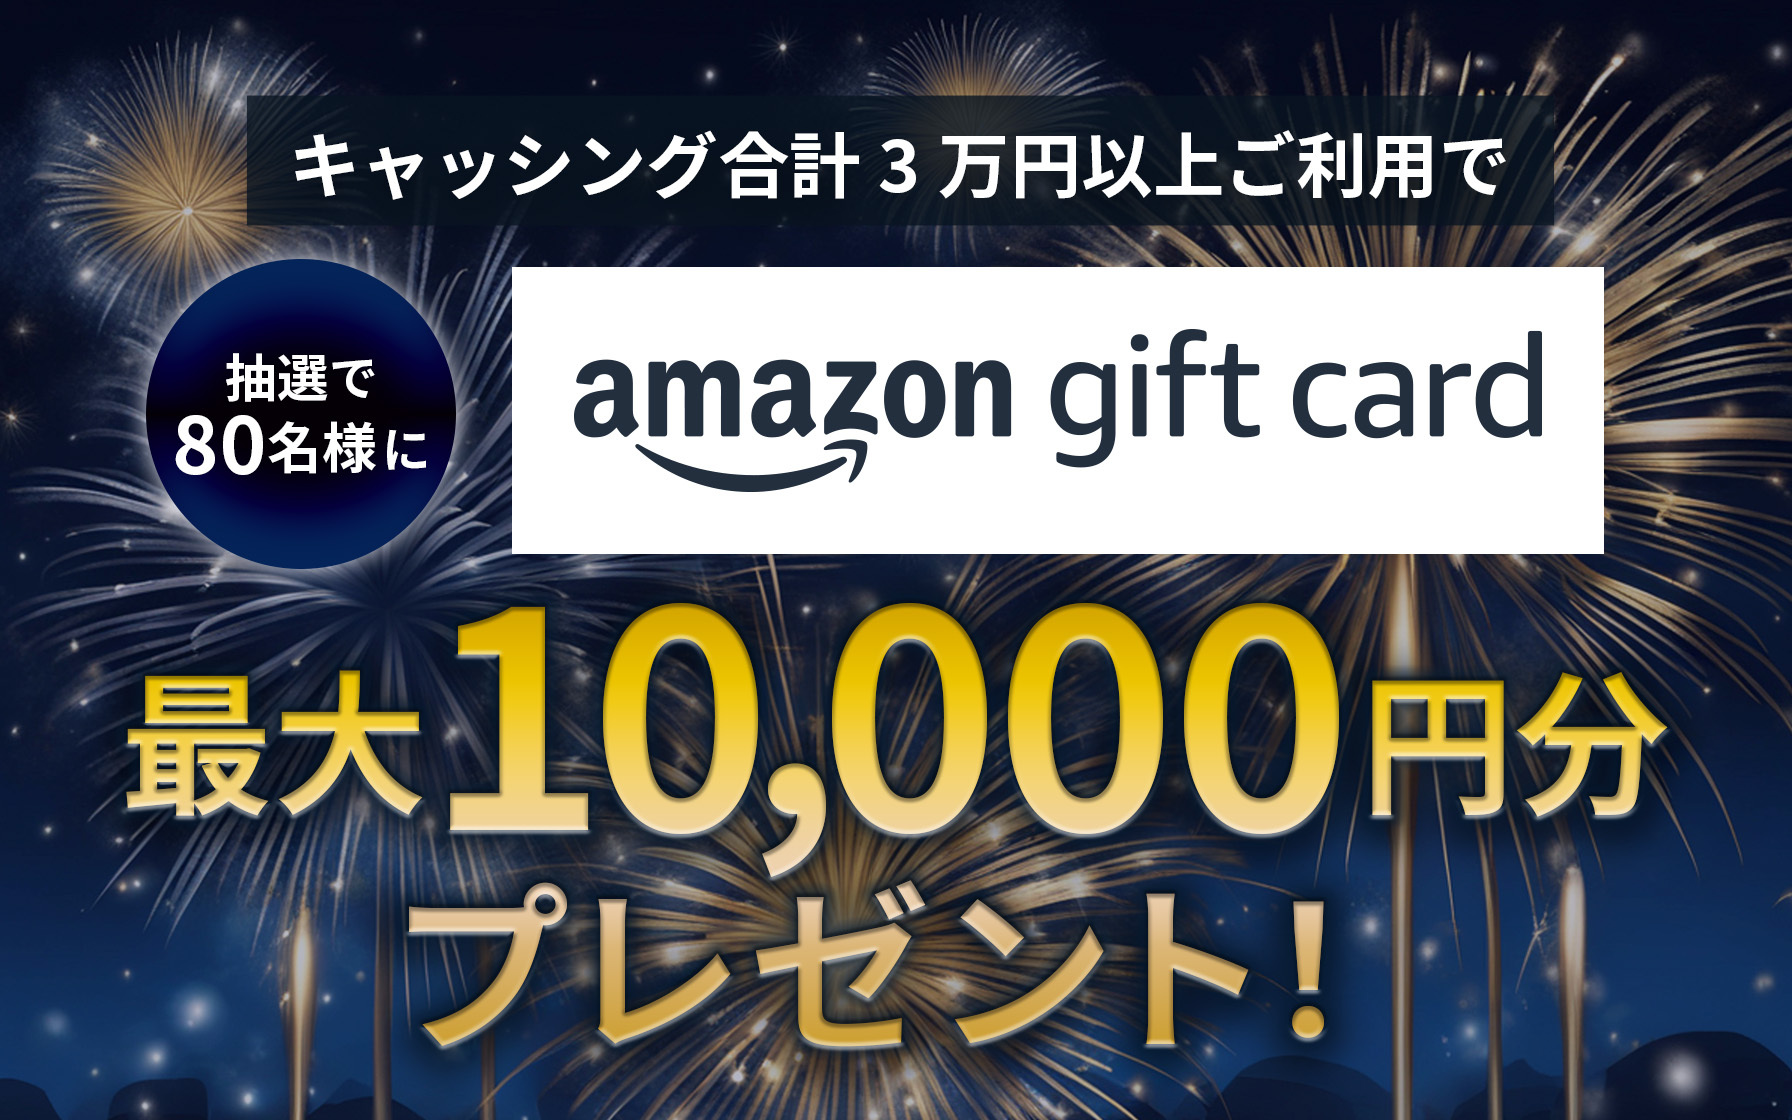 キャッシング合計3万円以上ご利用で、抽選で80名様にAmazonギフトカード最大1万円分プレゼント